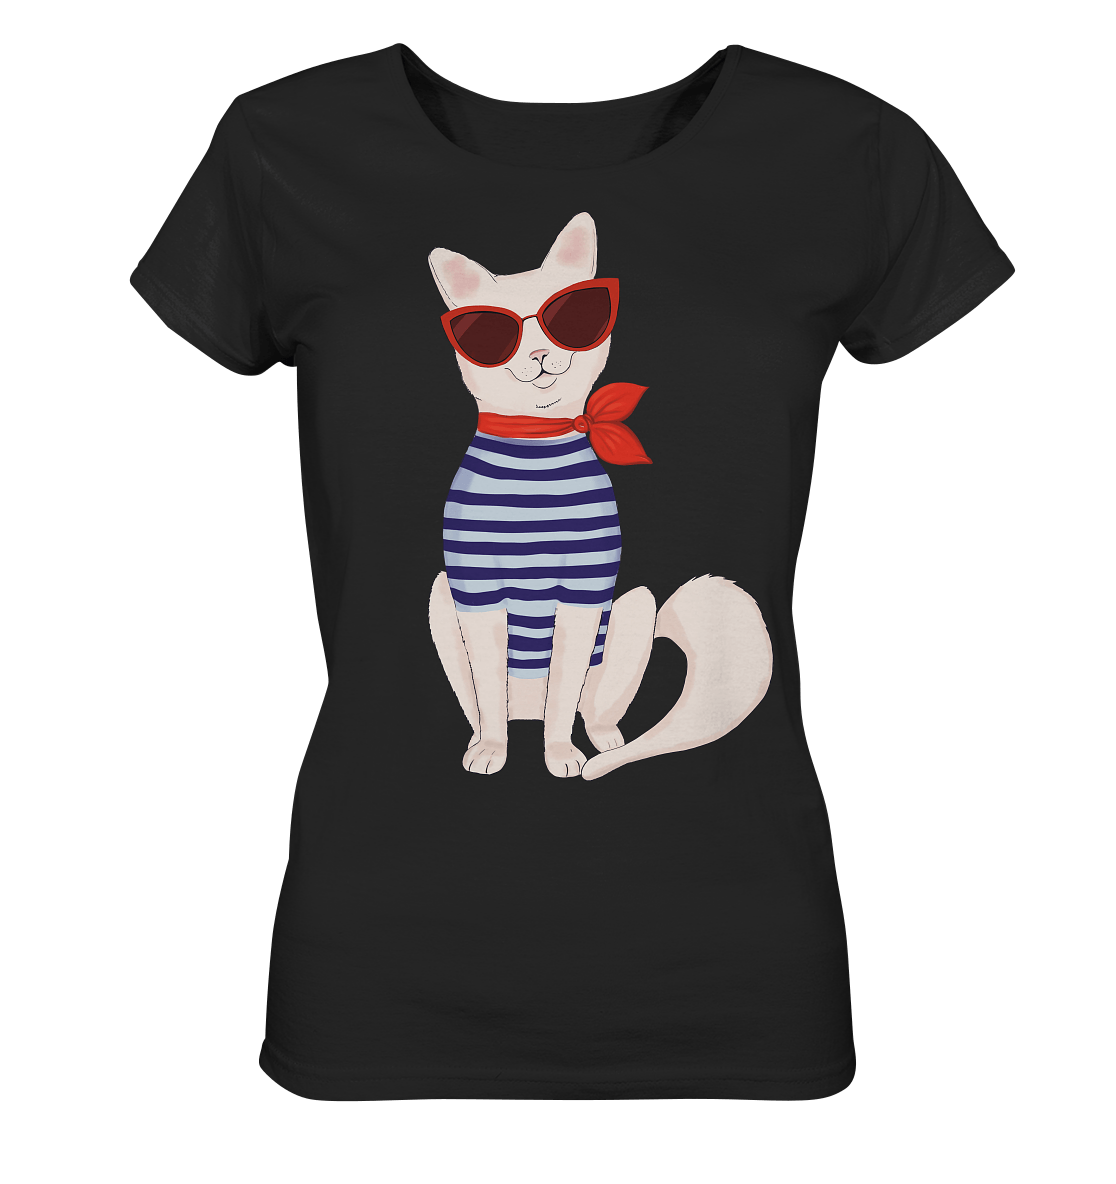 Damen T-Shirt mit Fashion Katze mit Matrosenhemd und roter sonnenbrille kaufen von bloominic